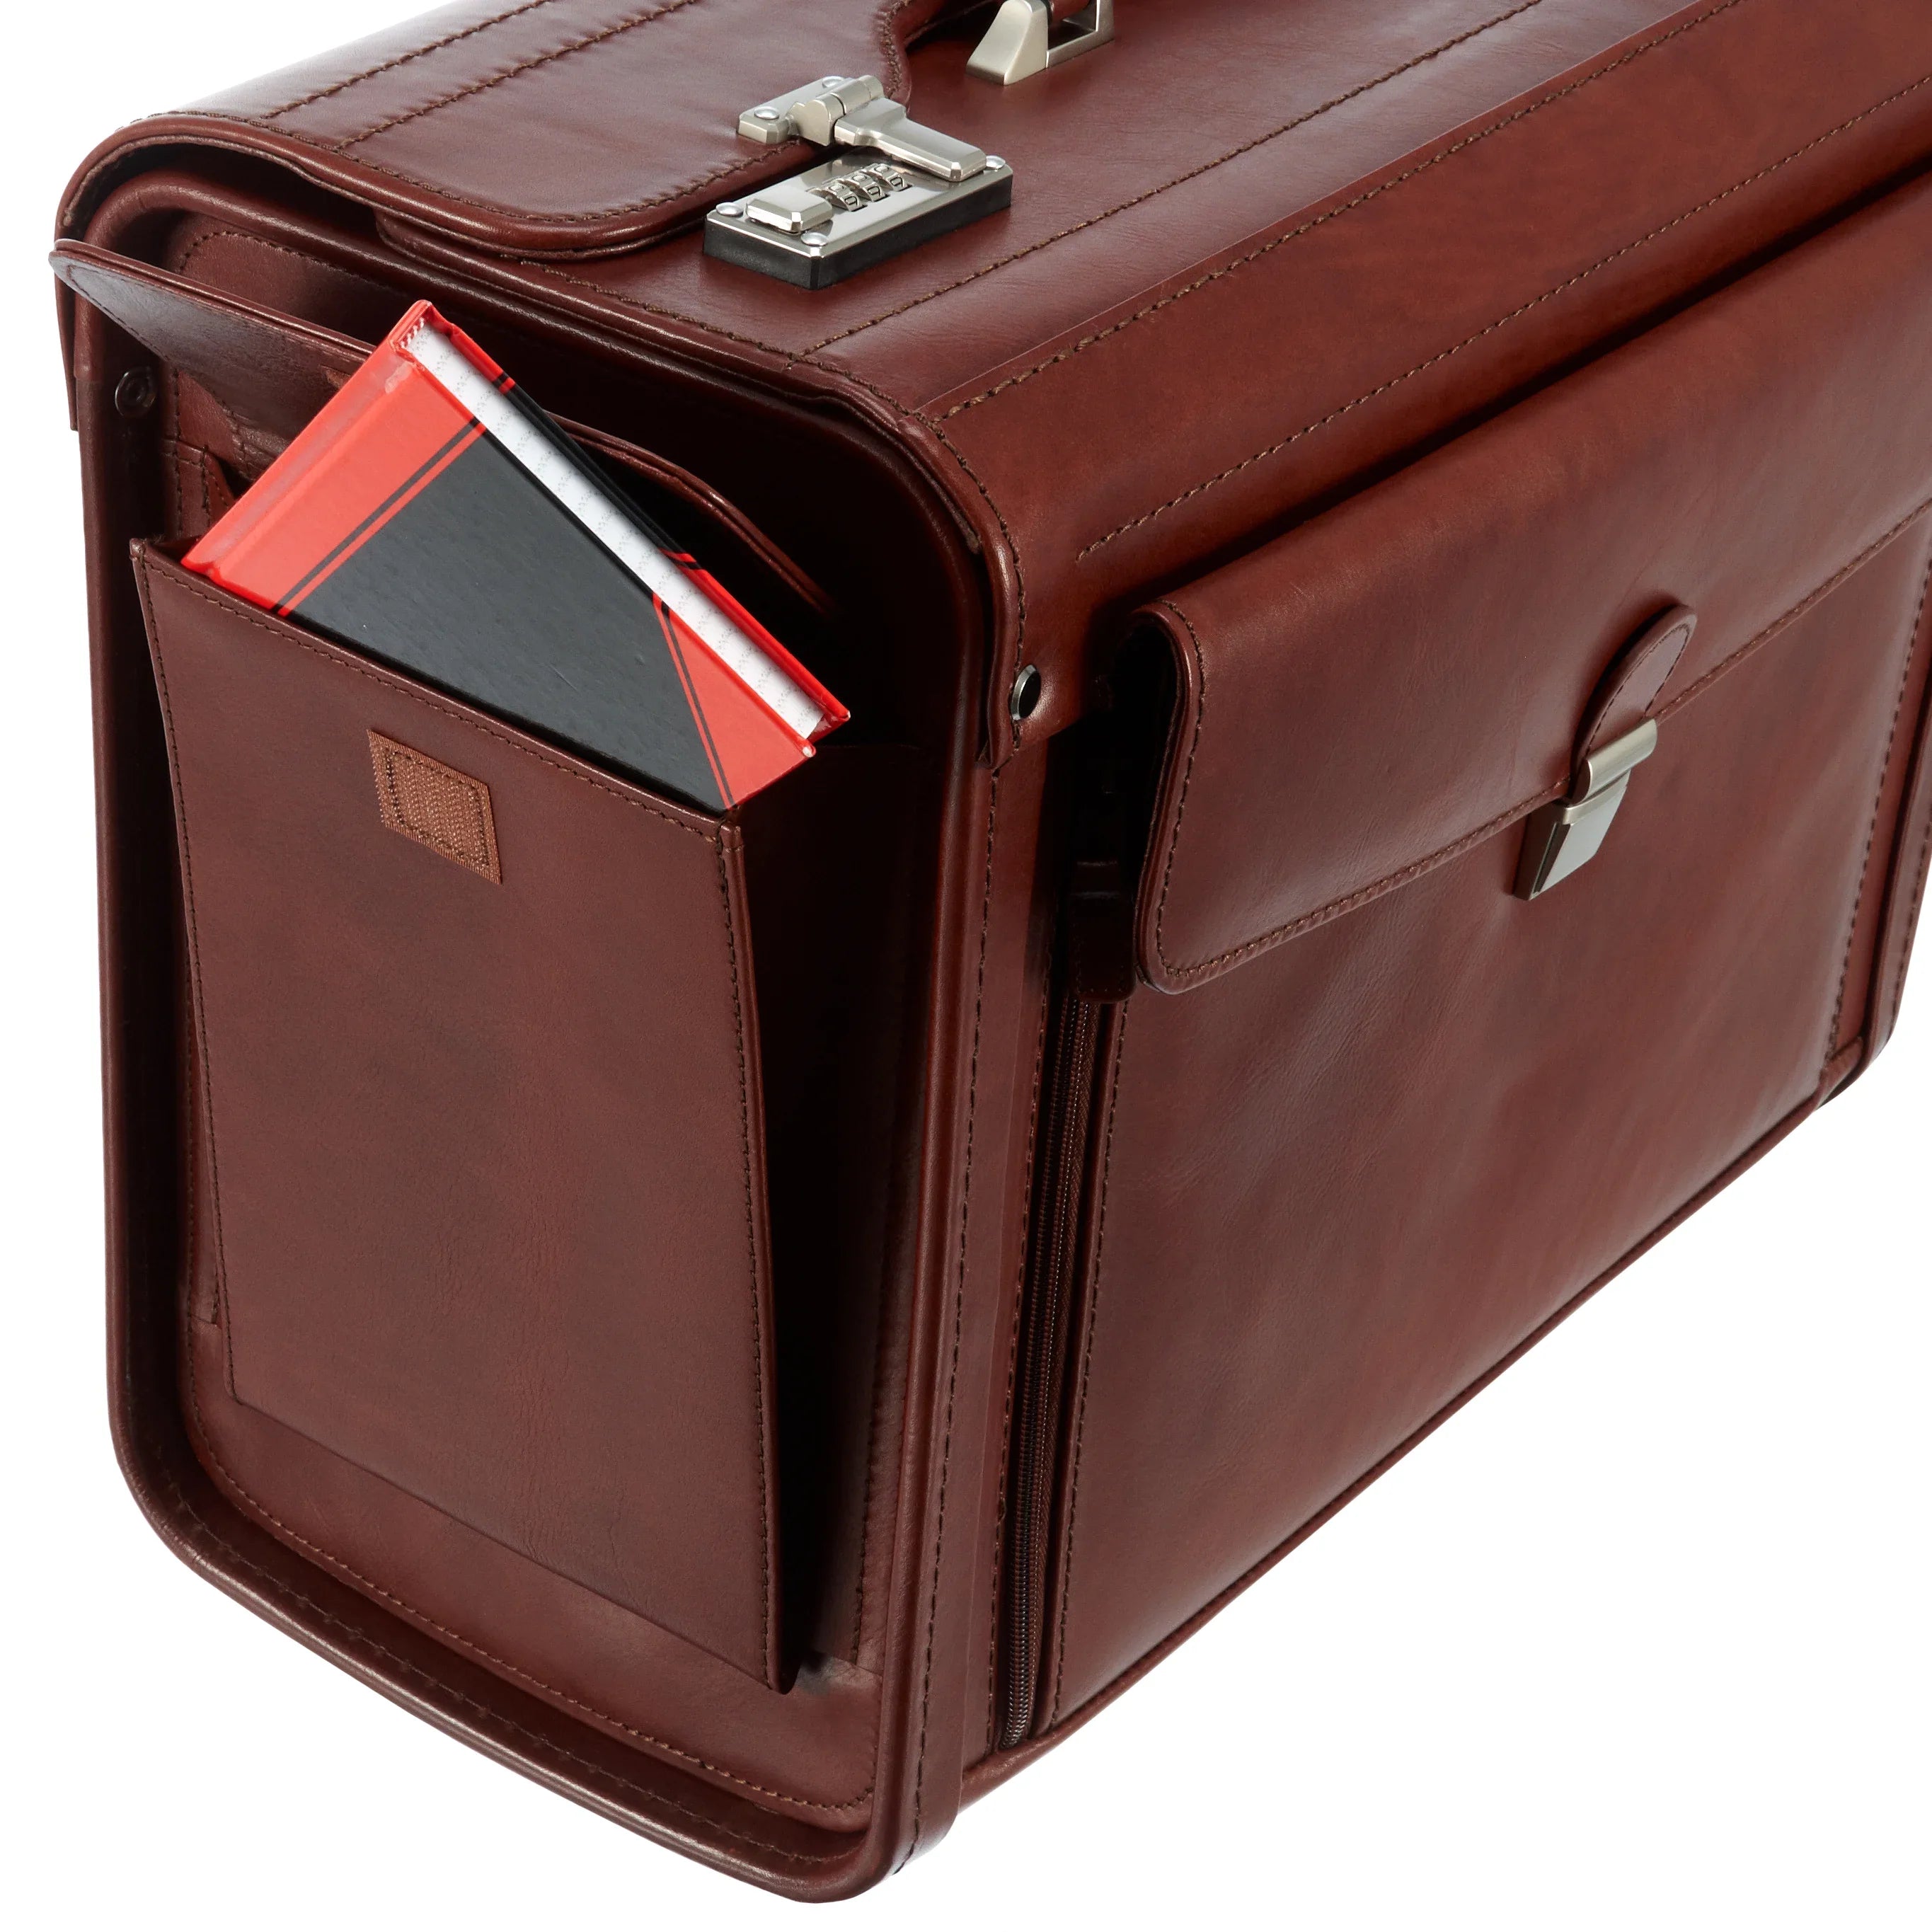 Dermata Business pilot case leather 45 cm - cognac